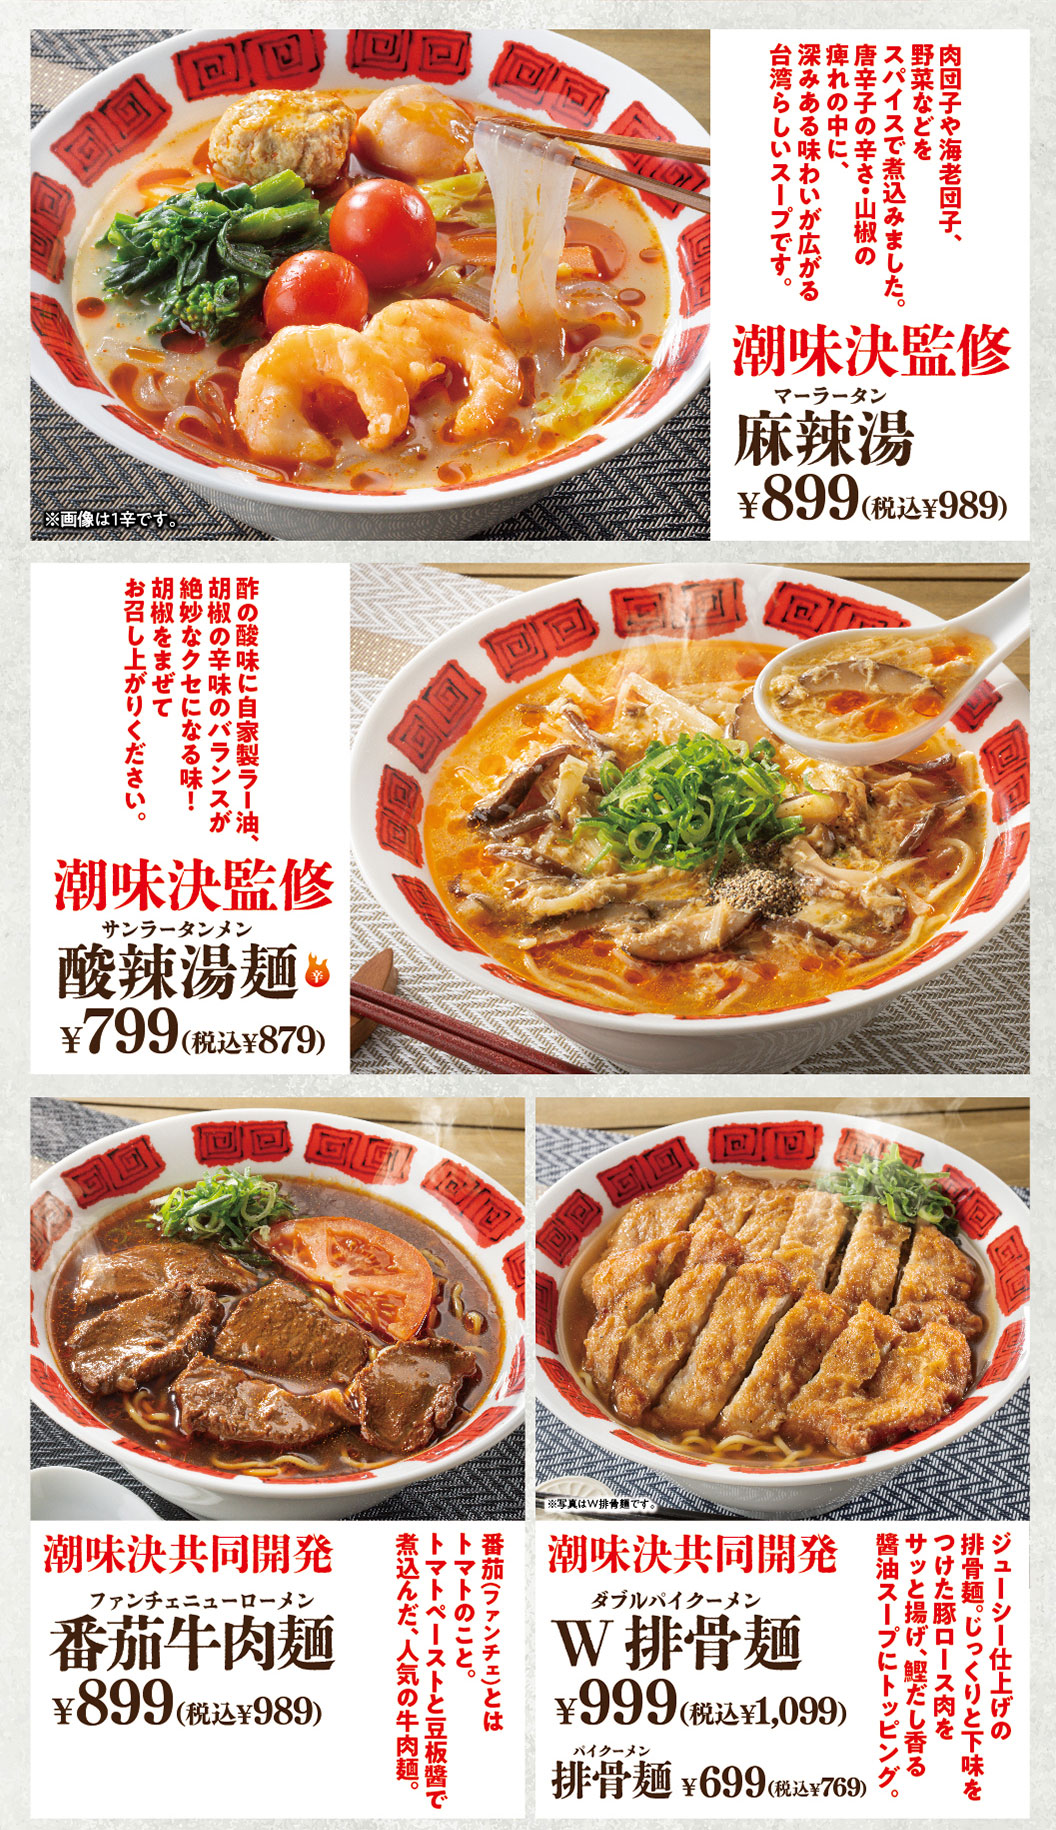 ซุปหม่าล่าดูแลโดย Kei Shiomi, บะหมี่ผัดเปรี้ยวหวาน, บะหมี่เนื้อมะเขือยาว, บะหมี่ไม่มีกระดูก